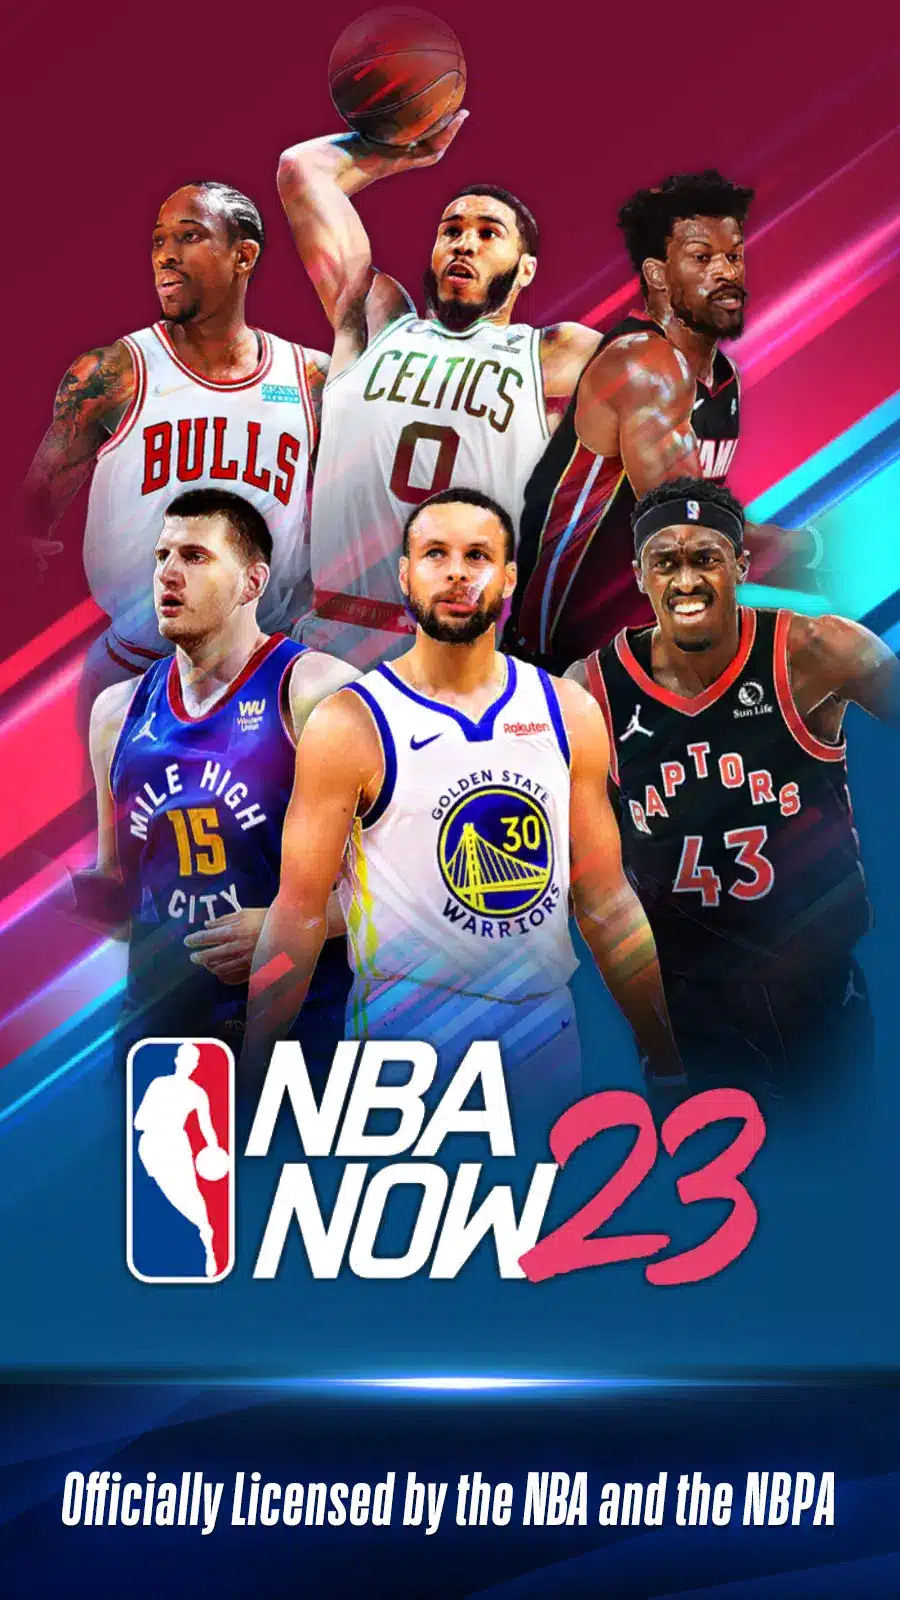 NBA NOW 23 Image 1